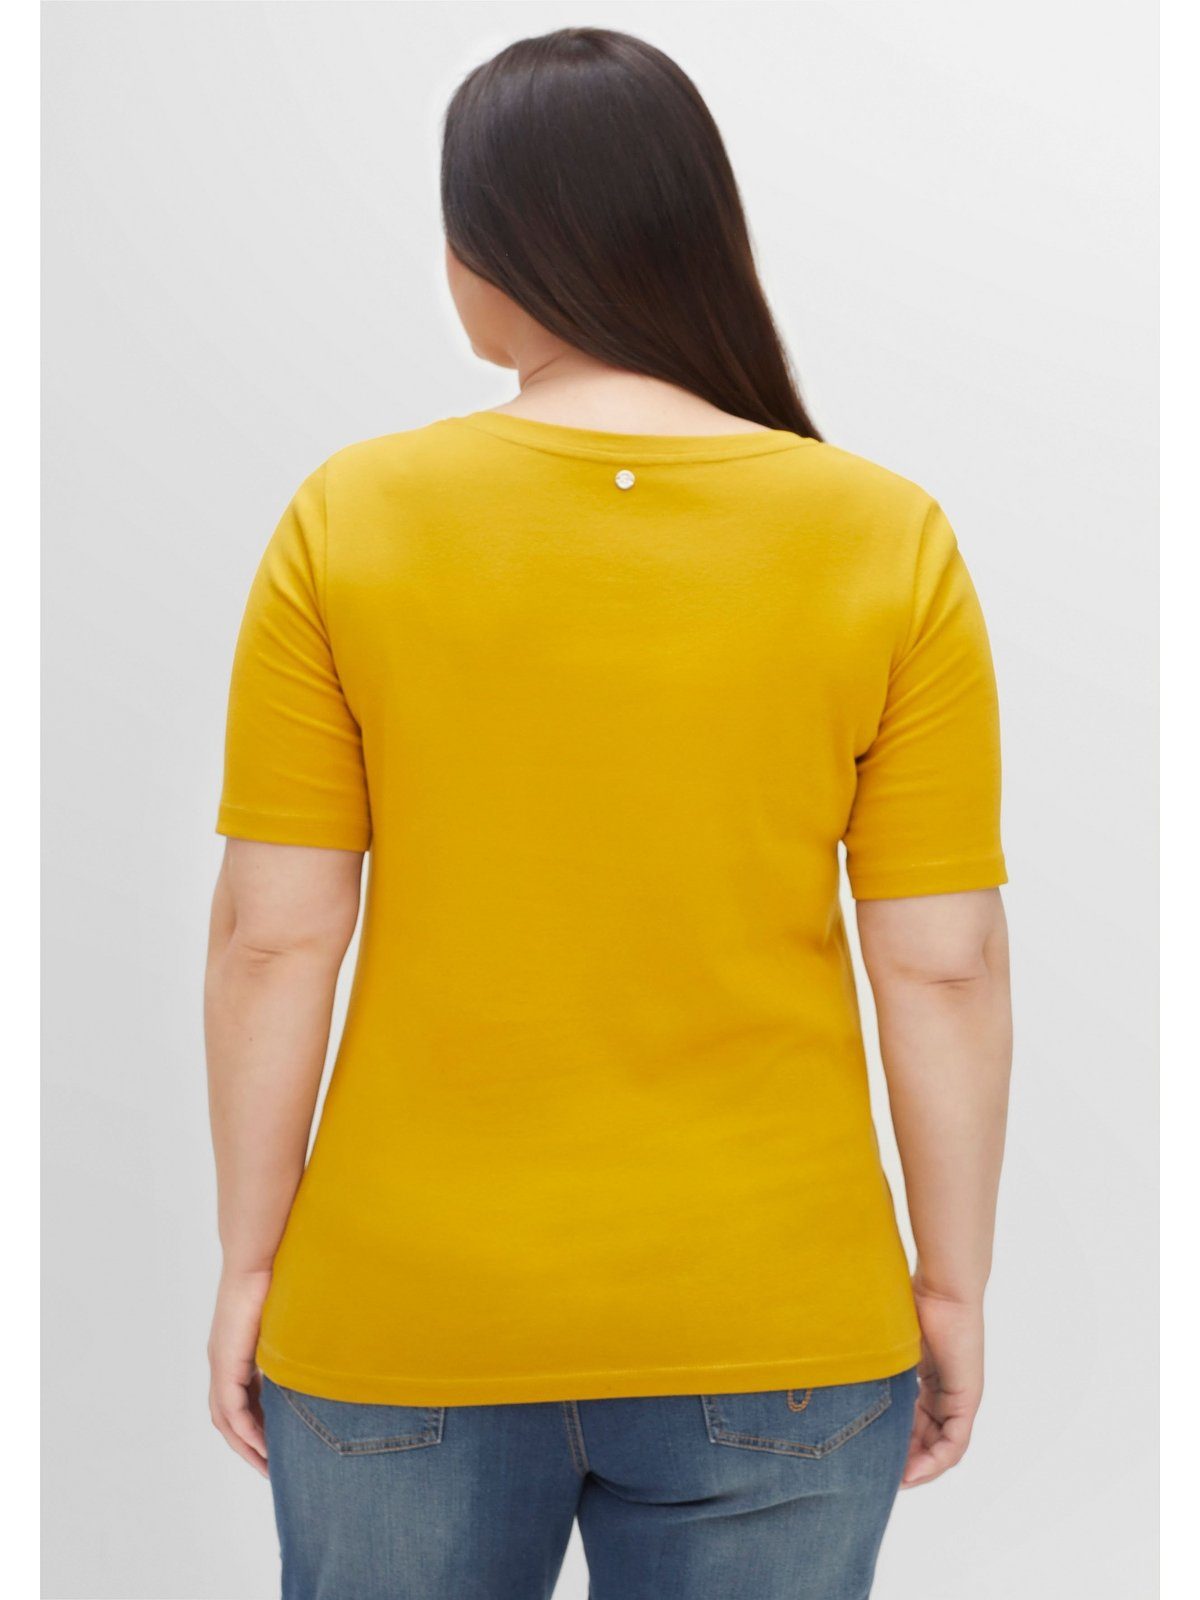 Sheego T-Shirt Große Größen Rippstruktur, mit Knopfleiste senfgelb in